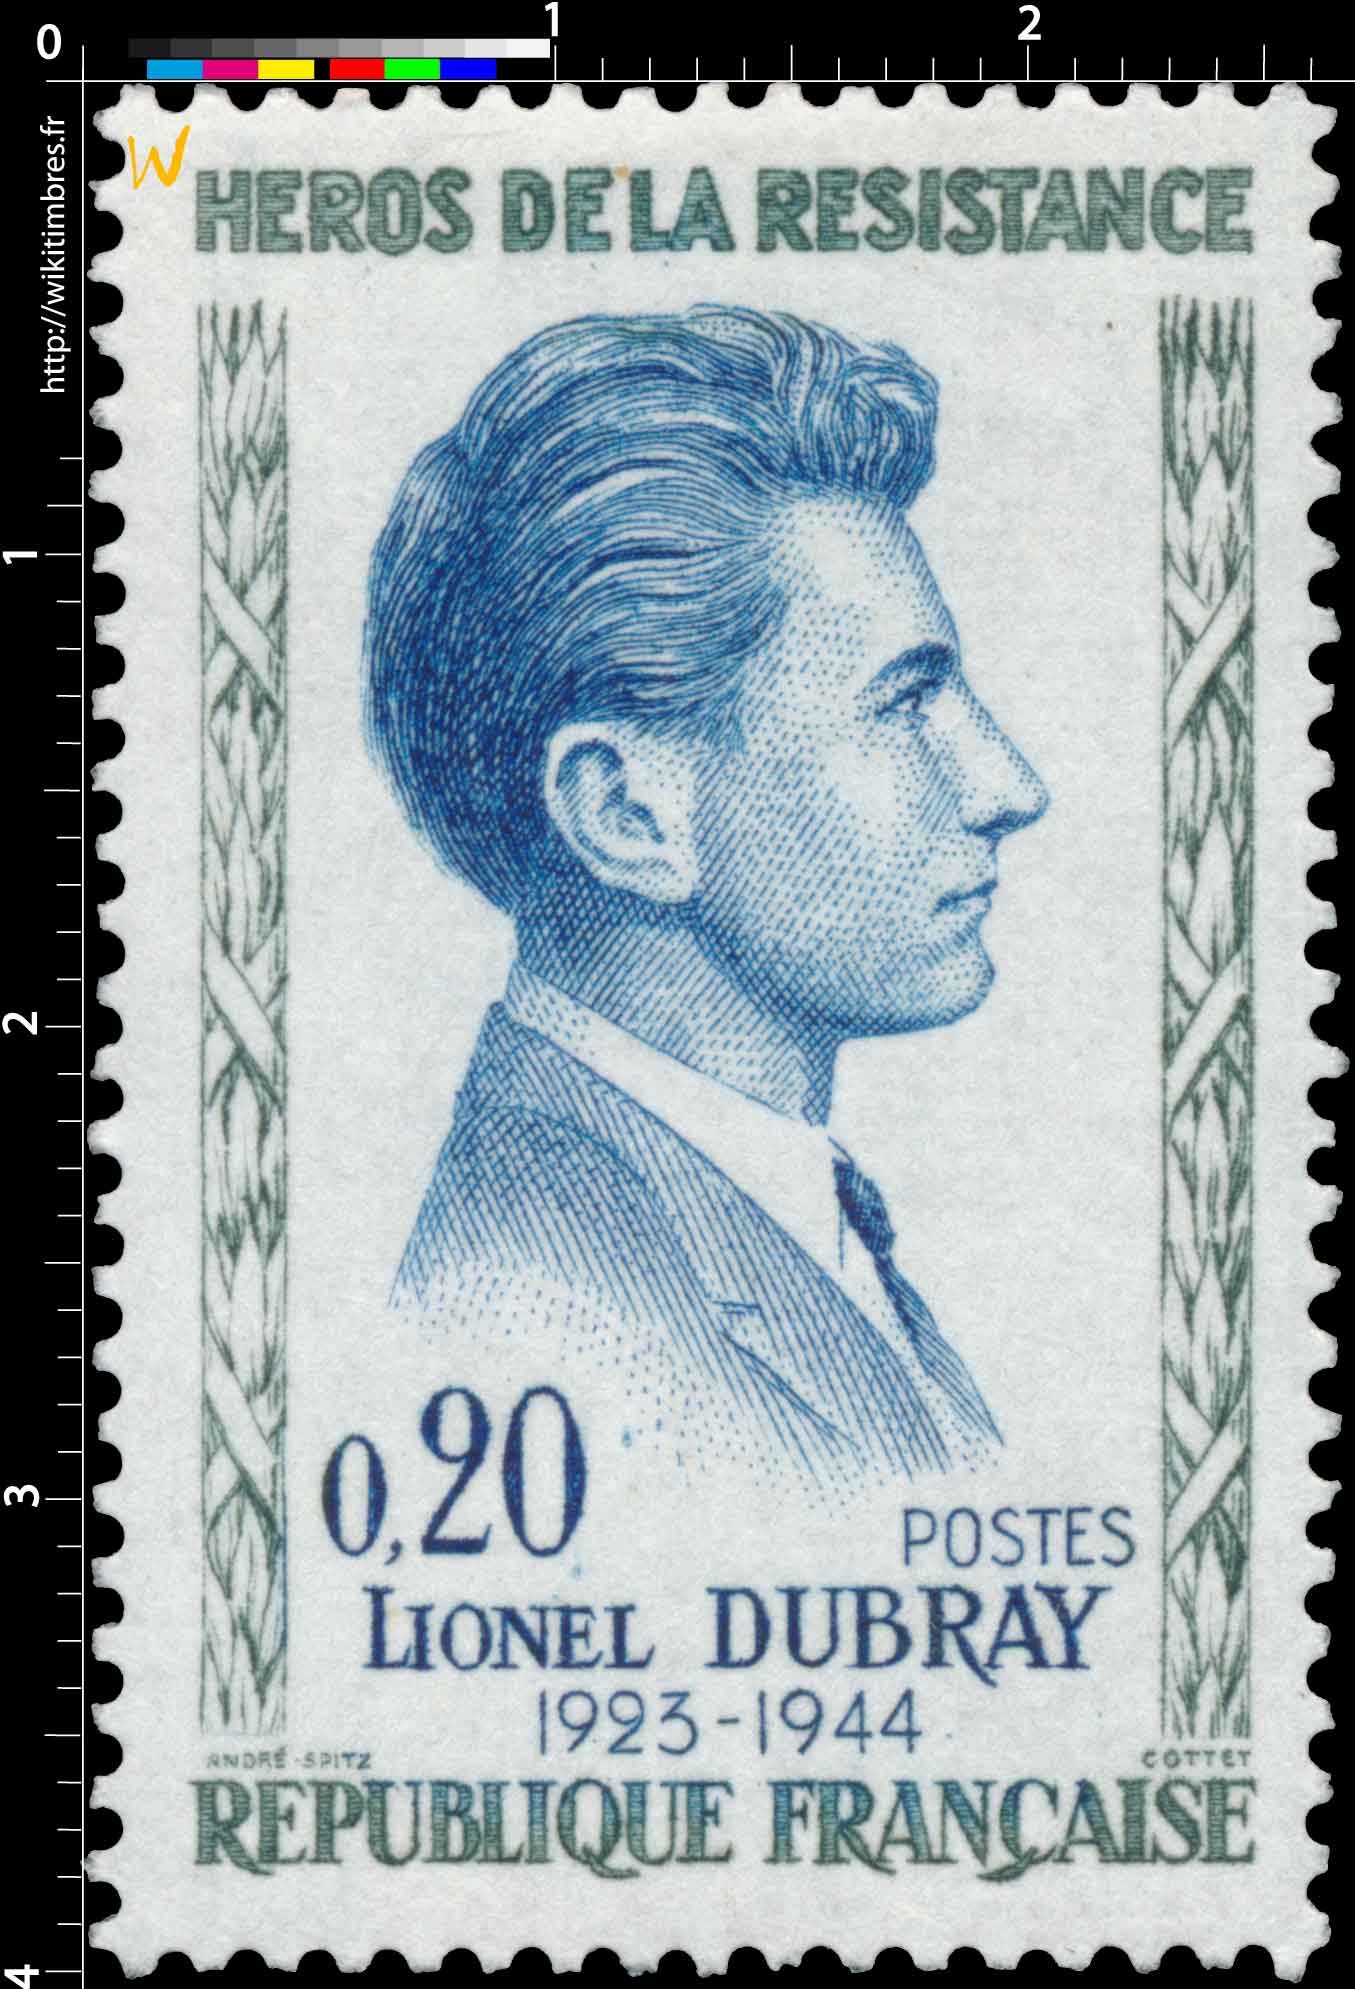 HÉROS DE LA RÉSISTANCE LIONEL DUBRAY 1923-1944